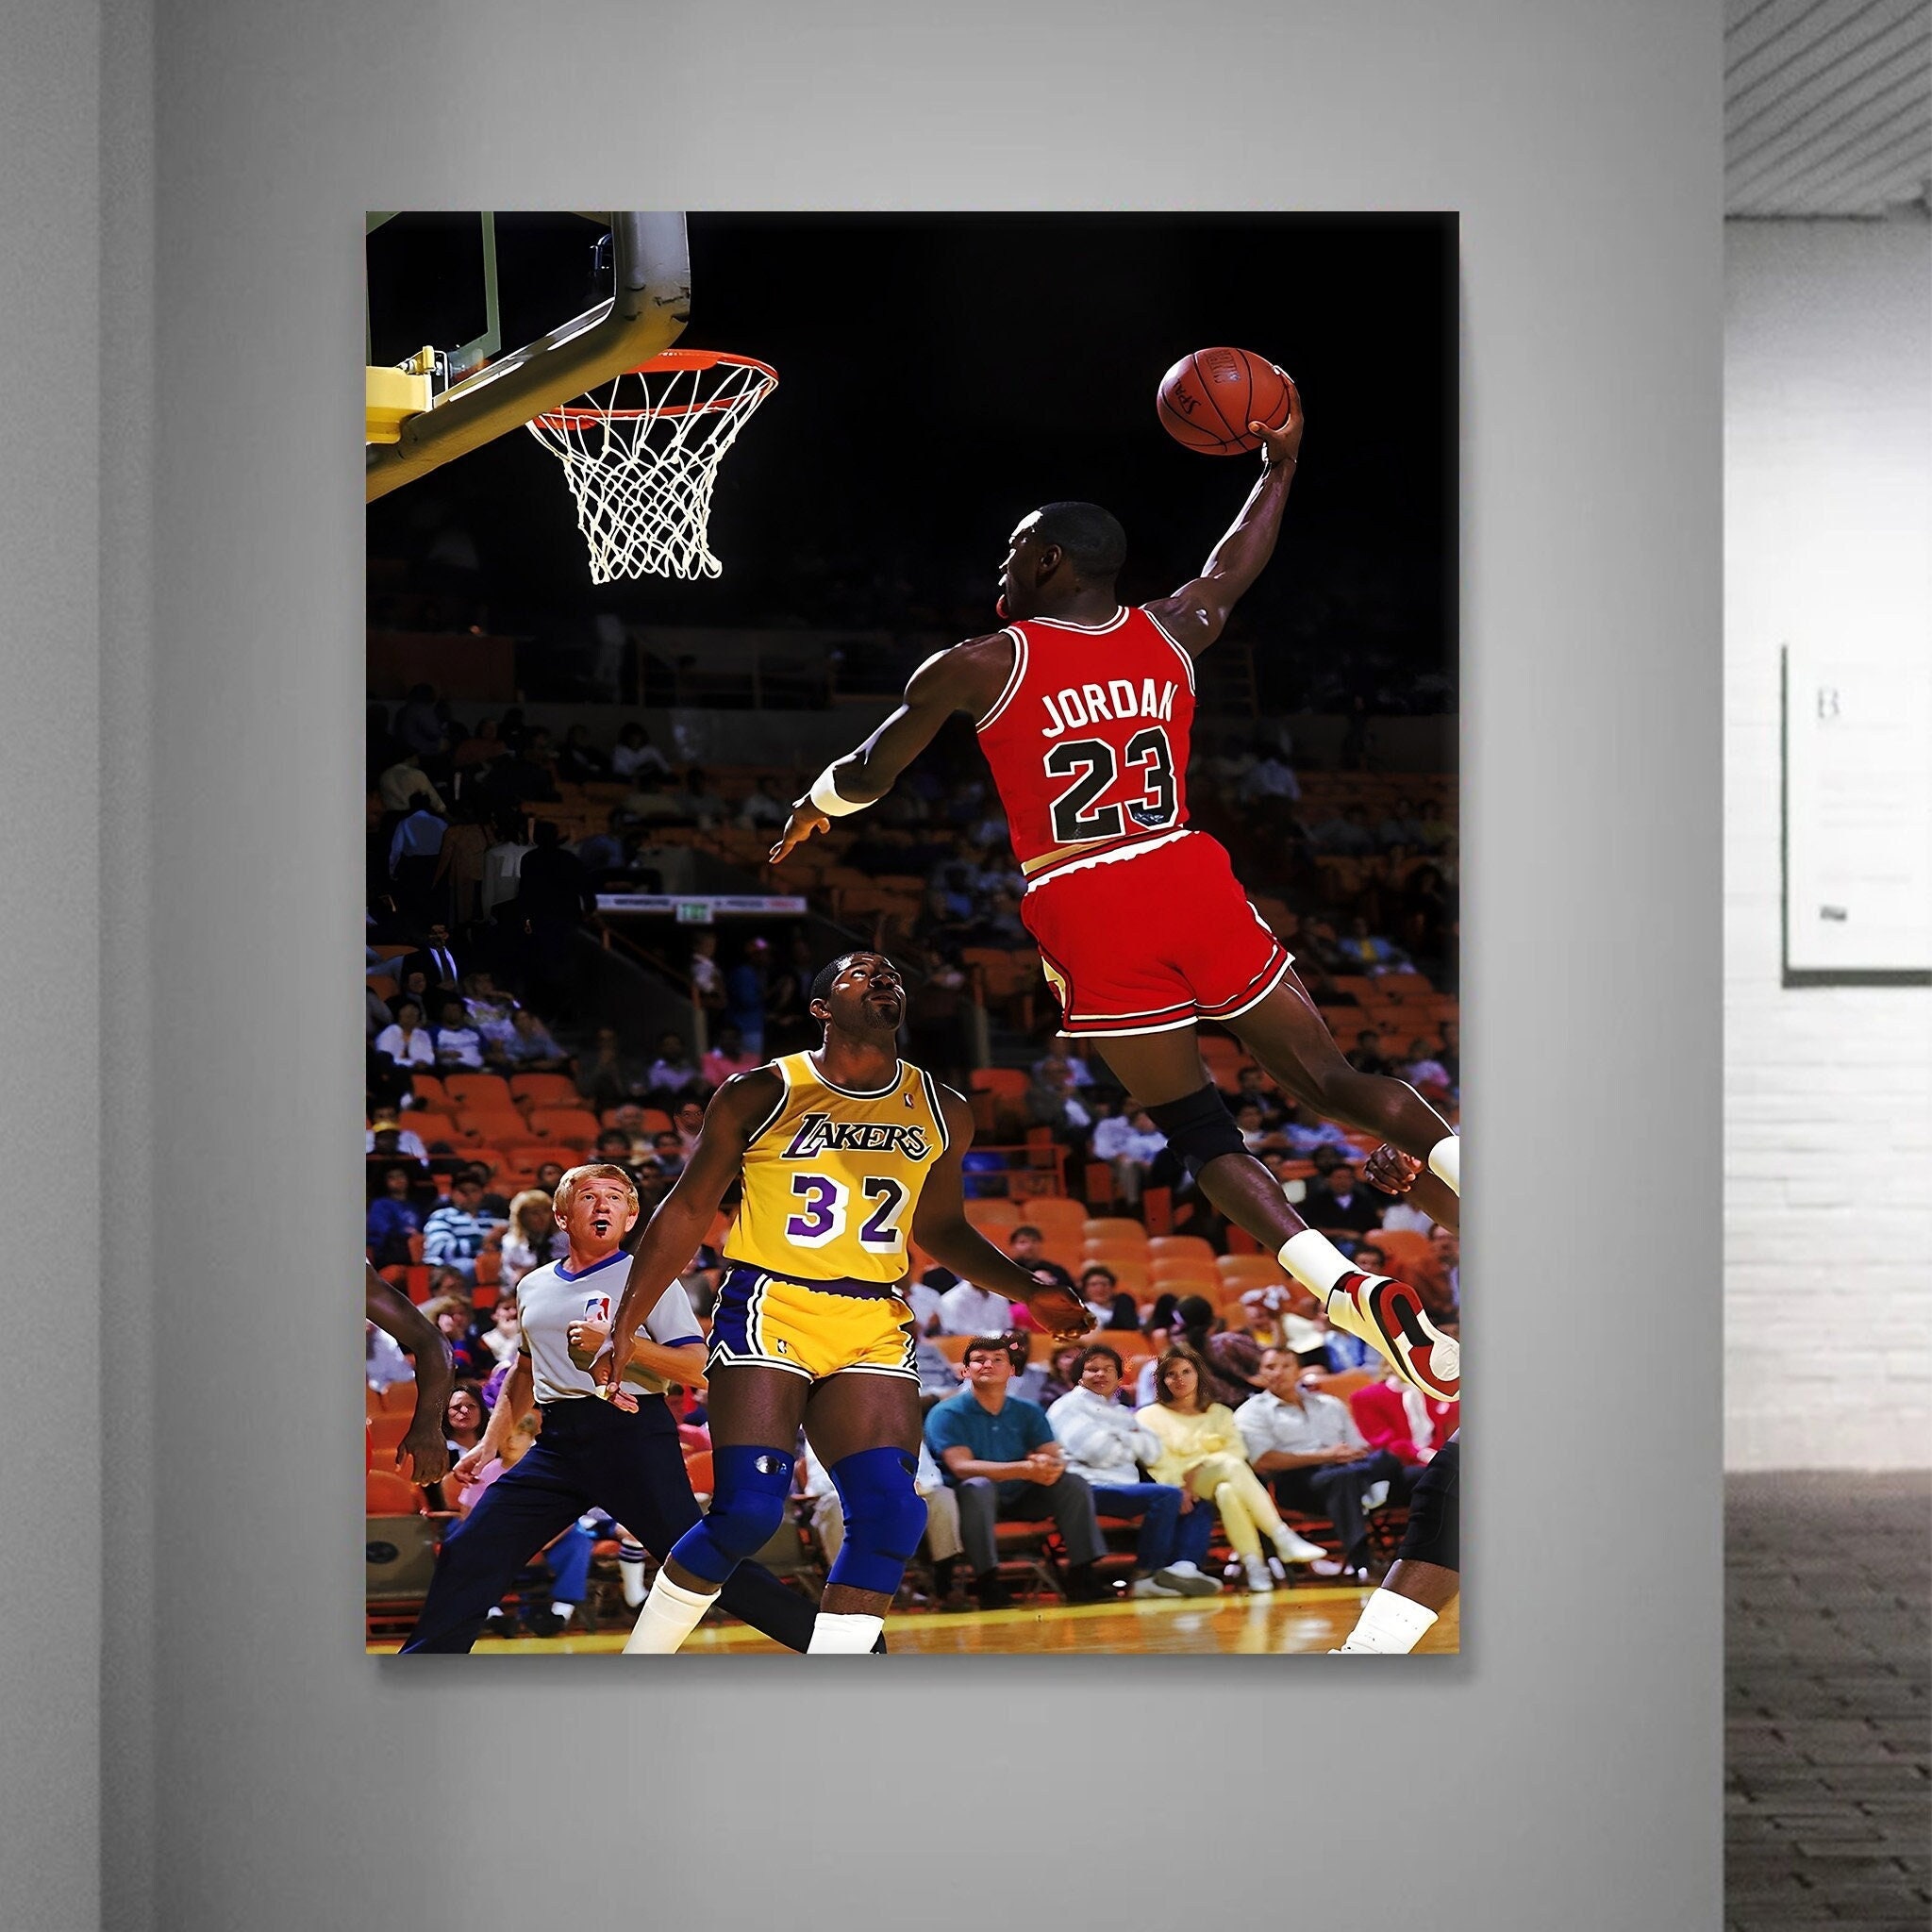 Michael Jordan Dunk by P-tecker on DeviantArt